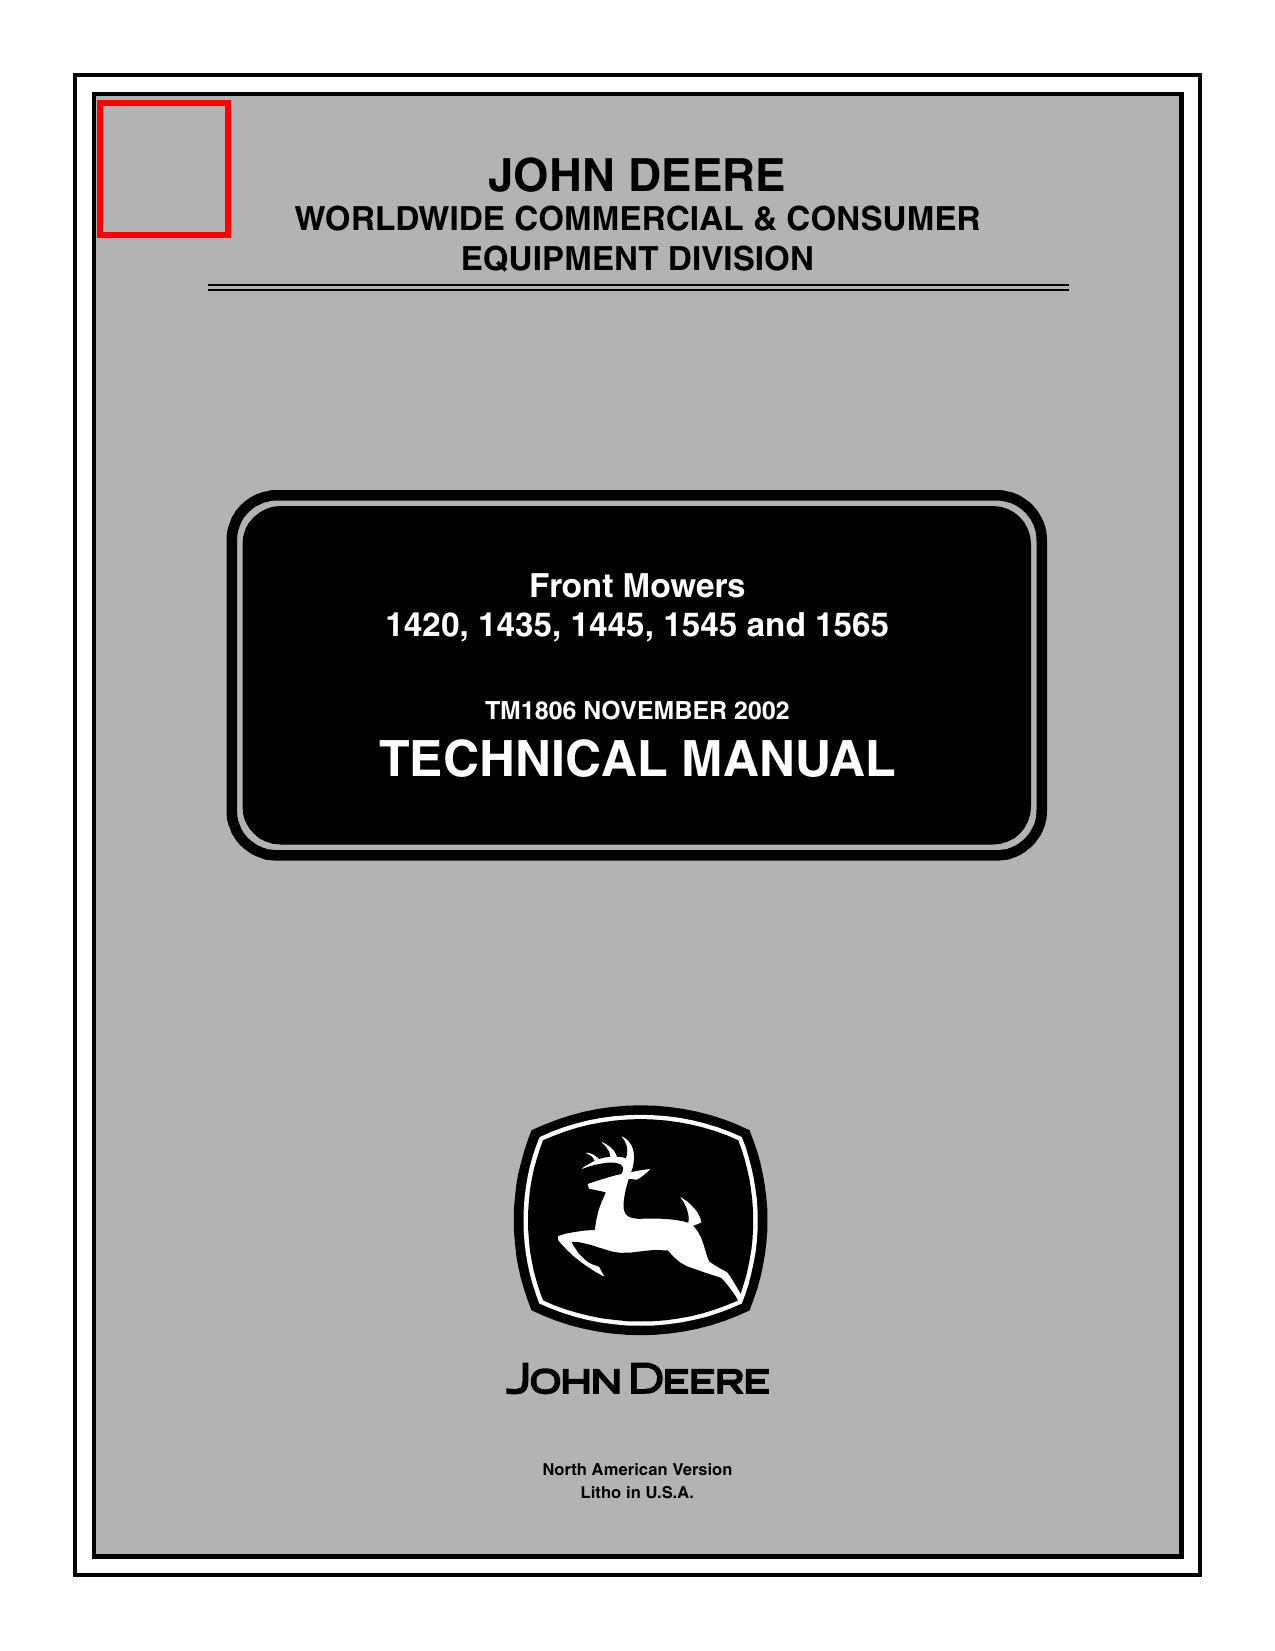 John Deere 1420, 1435, 1445, 1545, 1565 front mower manual Preview image 1